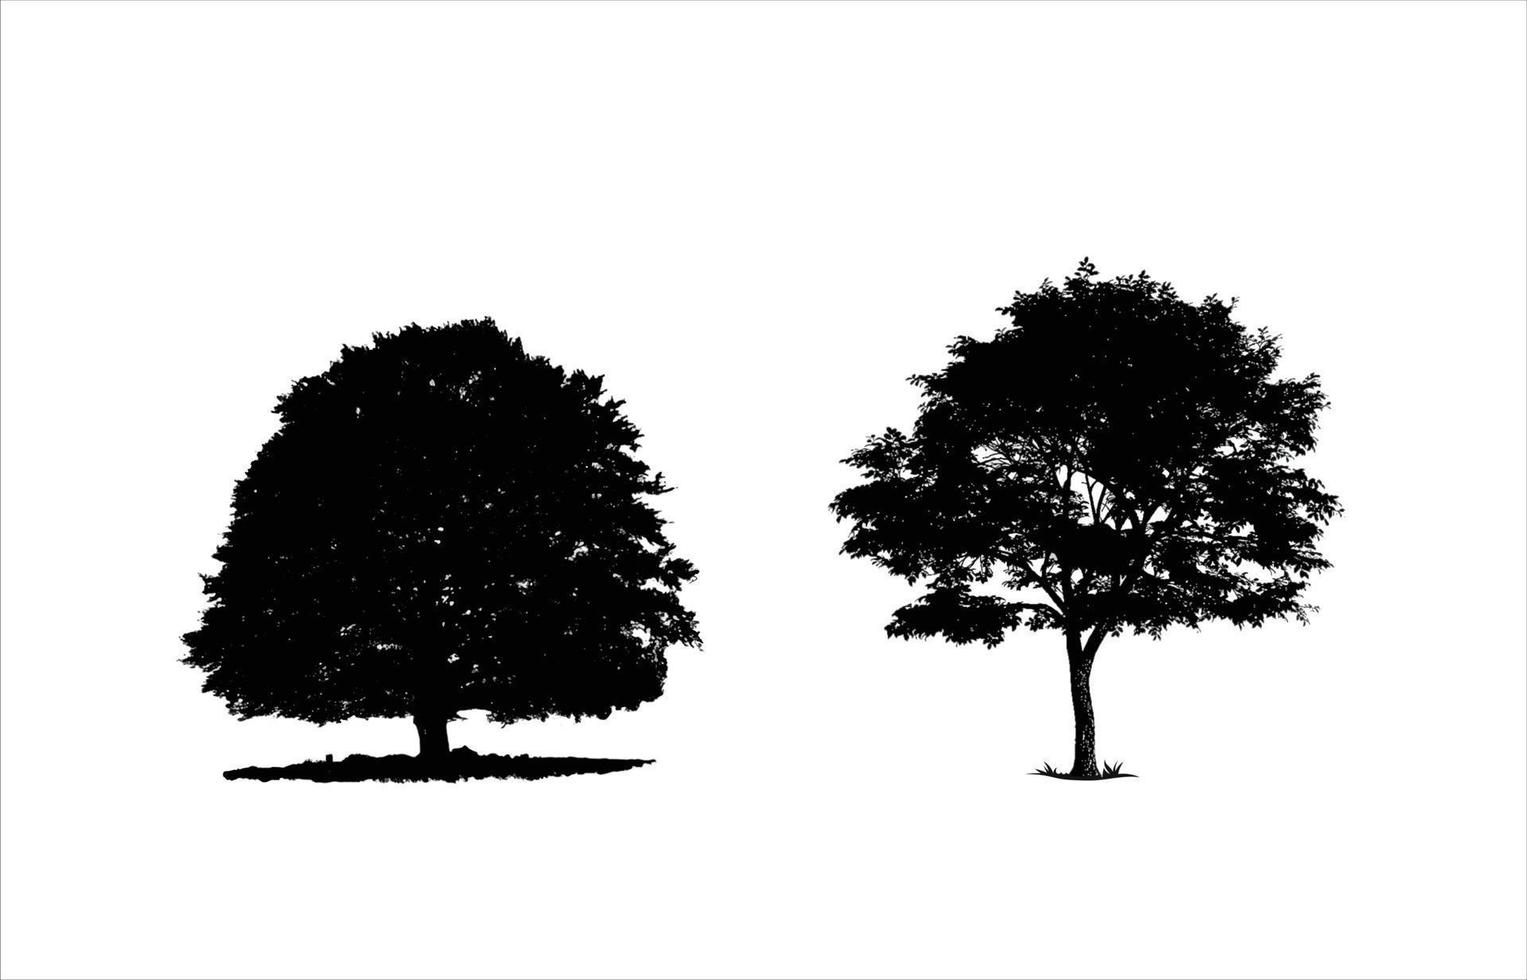 albero silhouette vettore illustrazione